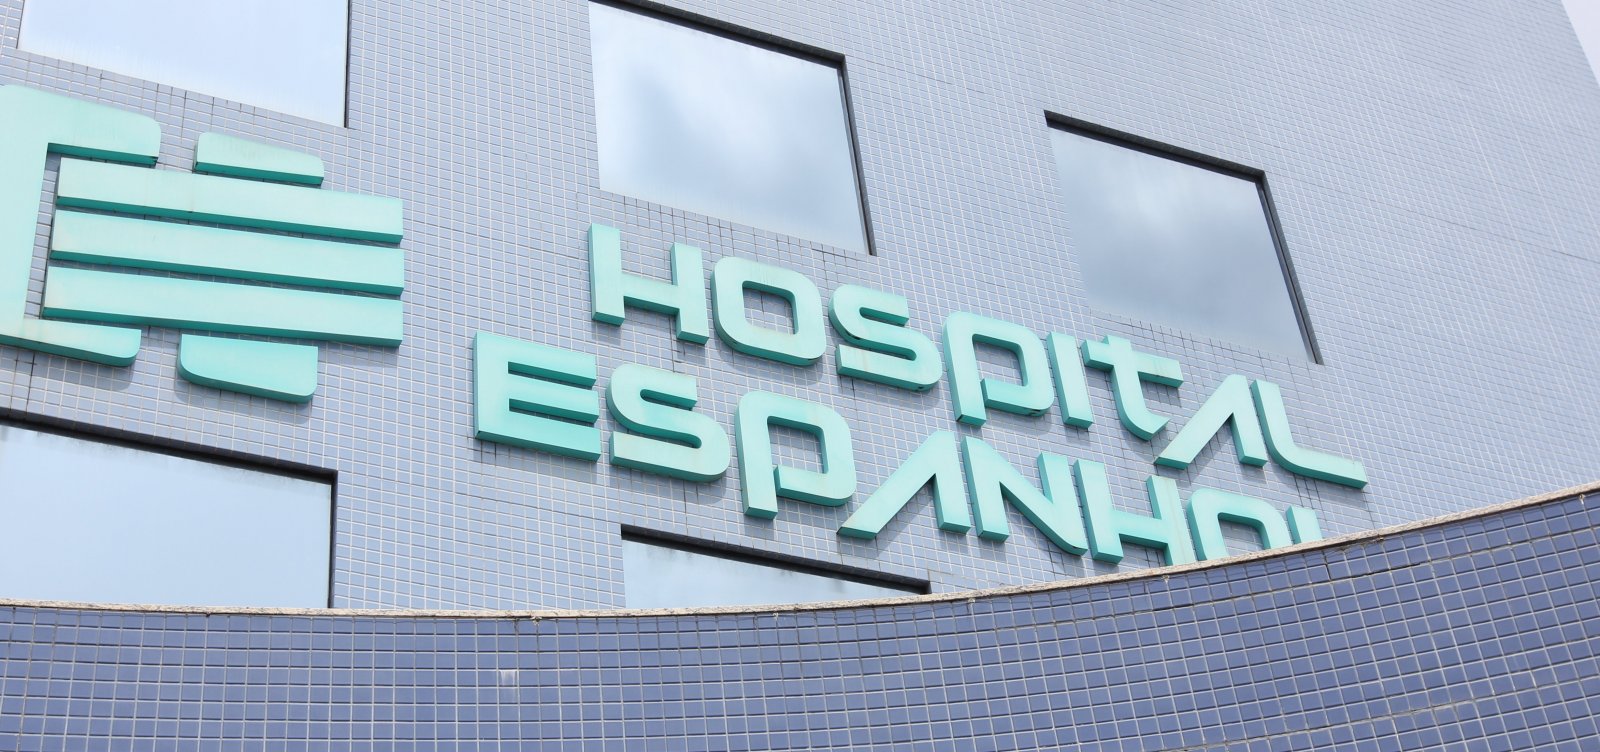 Governo estuda utilizar Hospital Espanhol para tratamentos do coronavírus